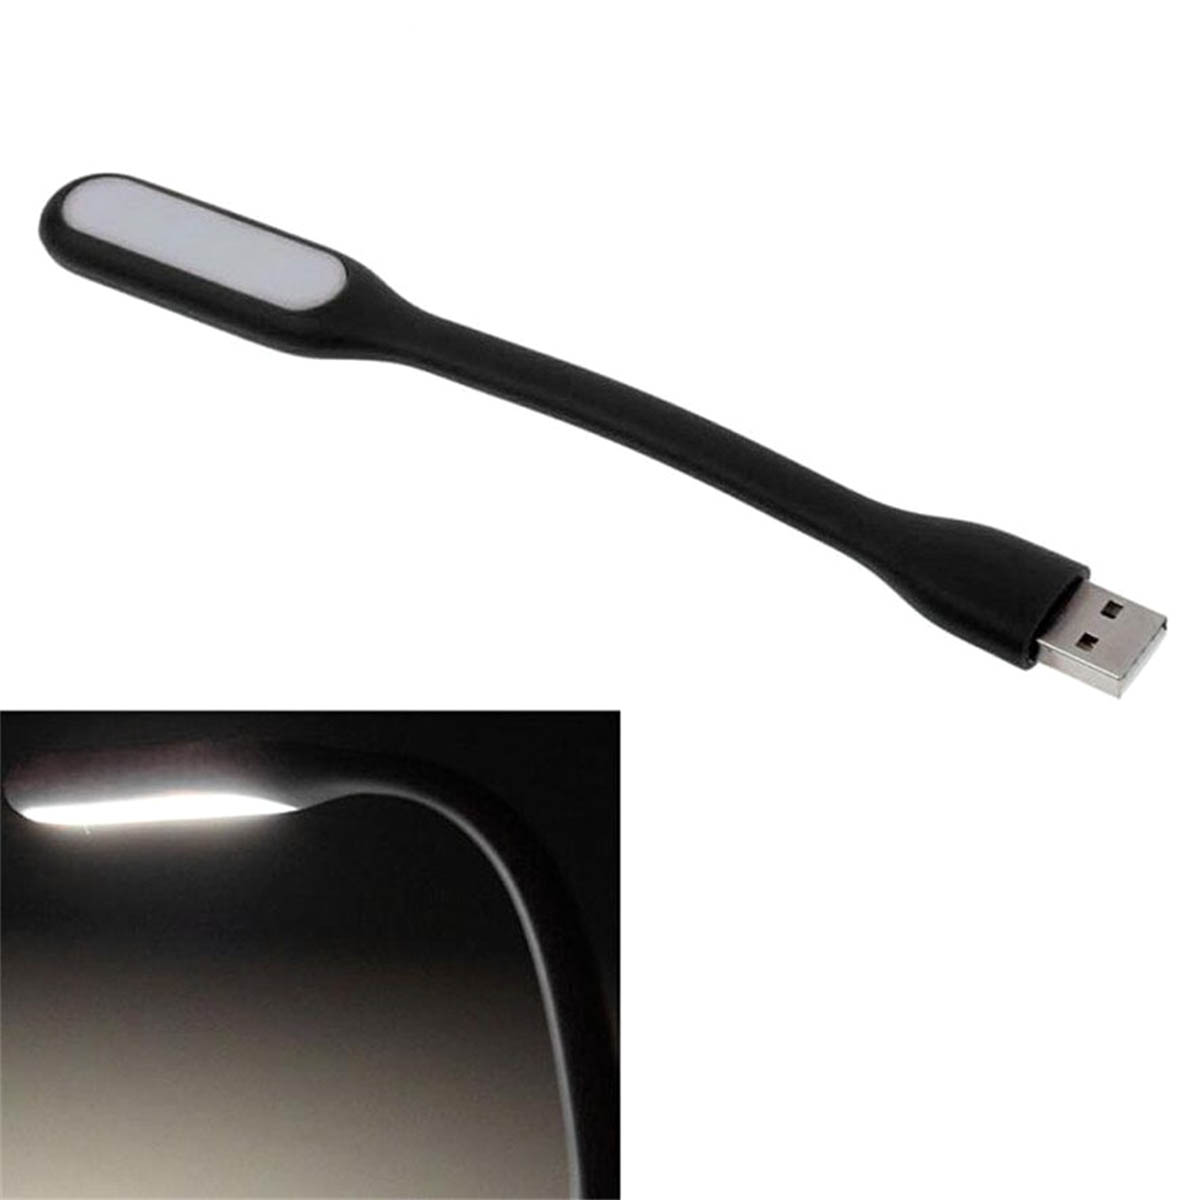 LED USB светильник, 6 диодов, длина 16.5 см, цвет черный